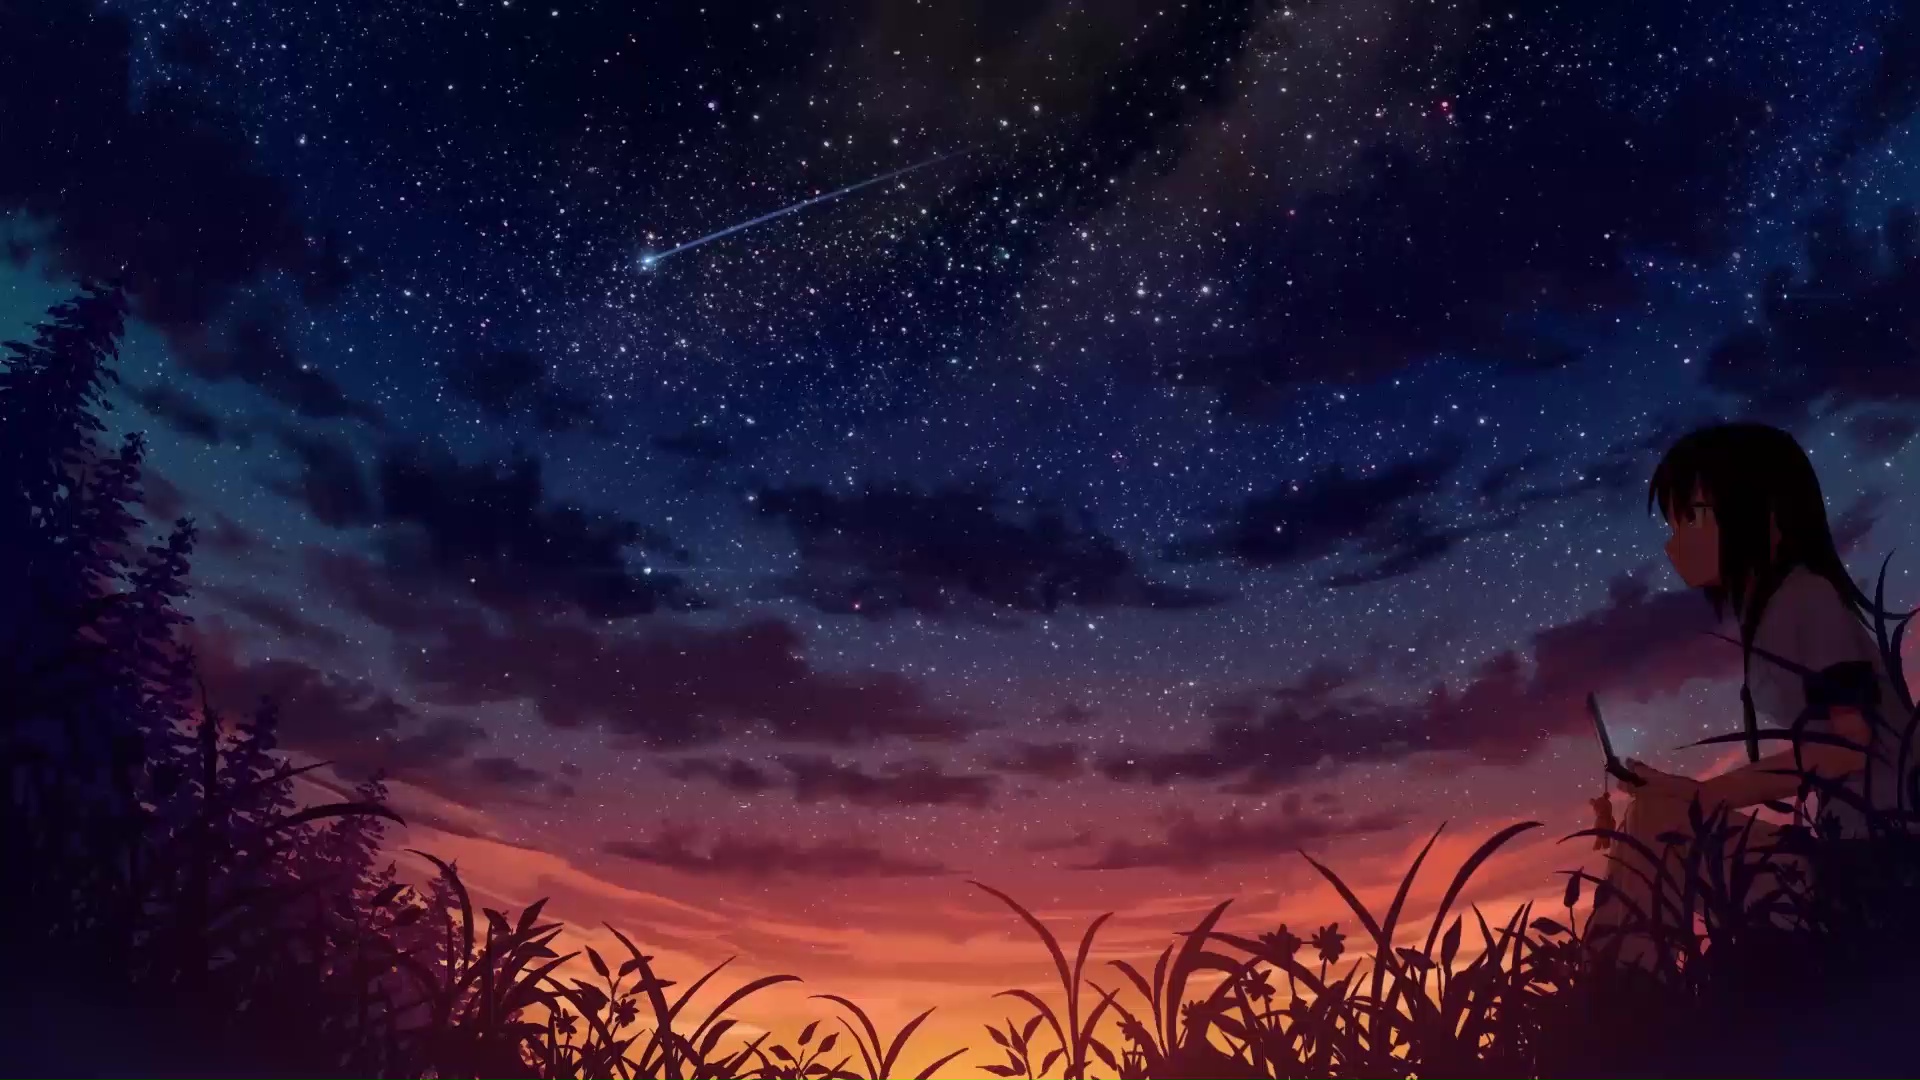 Đam mê với Anime? Bạn không thể bỏ qua bức tranh trực tiếp được chuyển động Anime Starry Night Sky Live Wallpaper từ WallpaperWaifu. Download miễn phí và thưởng thức cảm giác lãng mạn và tinh tế mà những trang trí độc đáo này mang lại cho bạn.